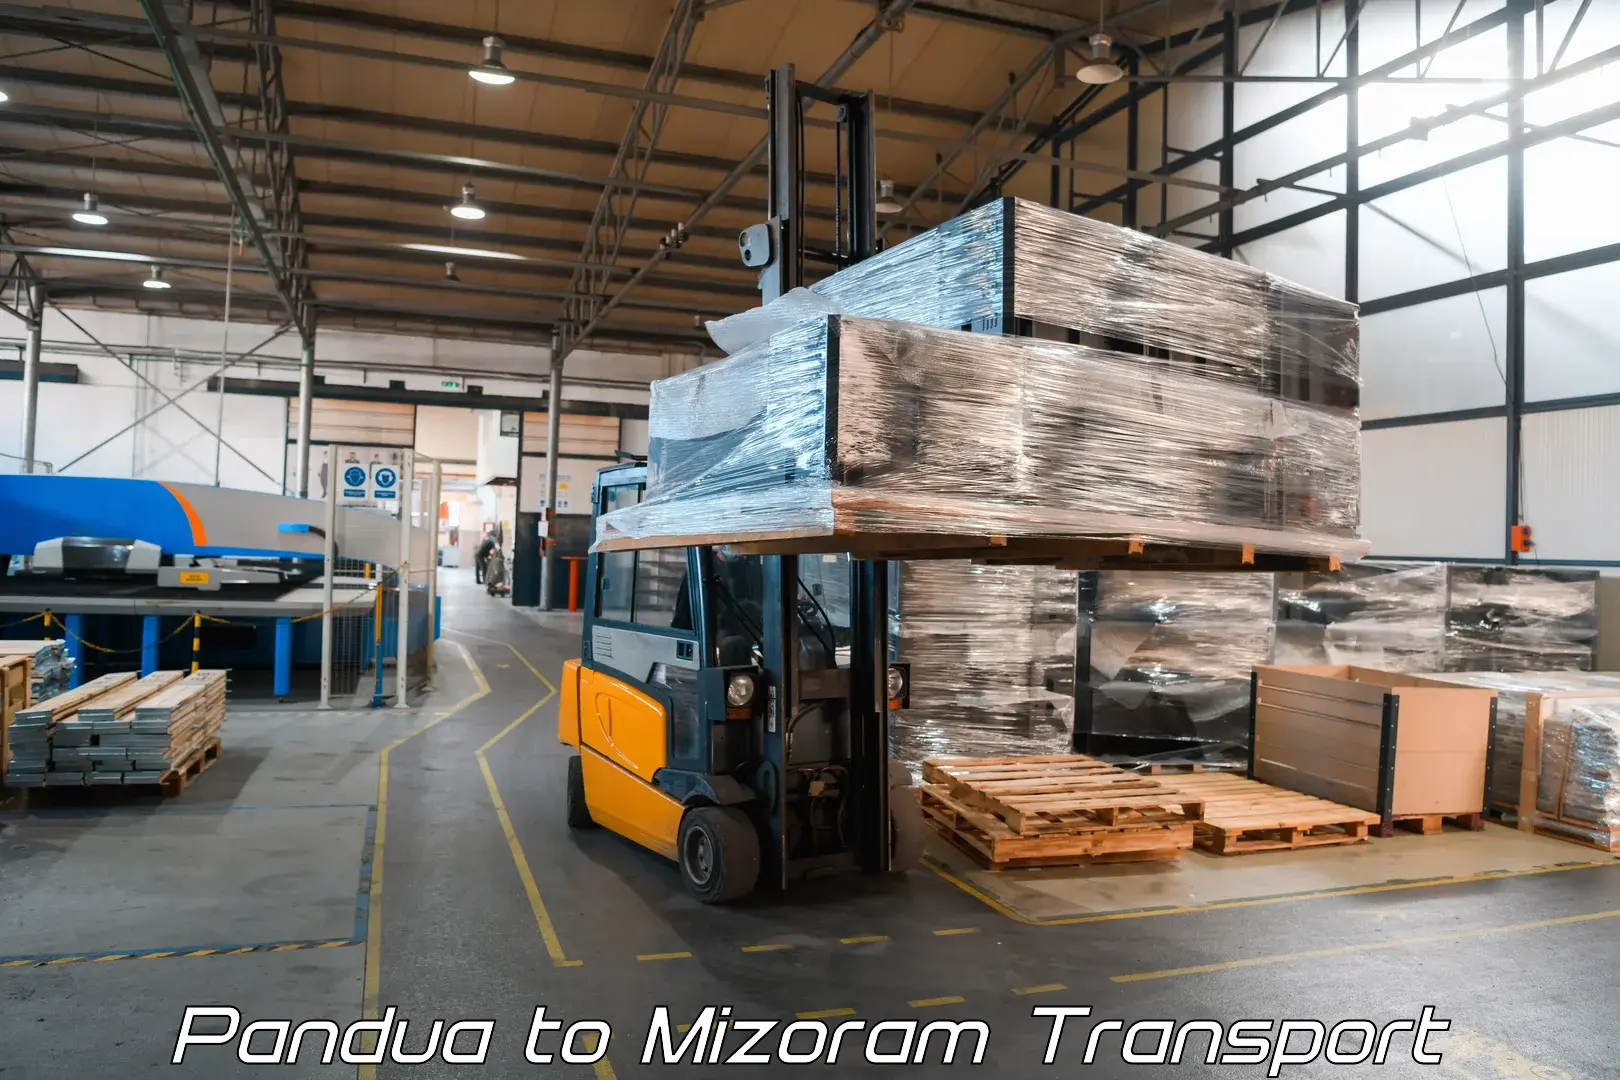 Air freight transport services Pandua to Mizoram